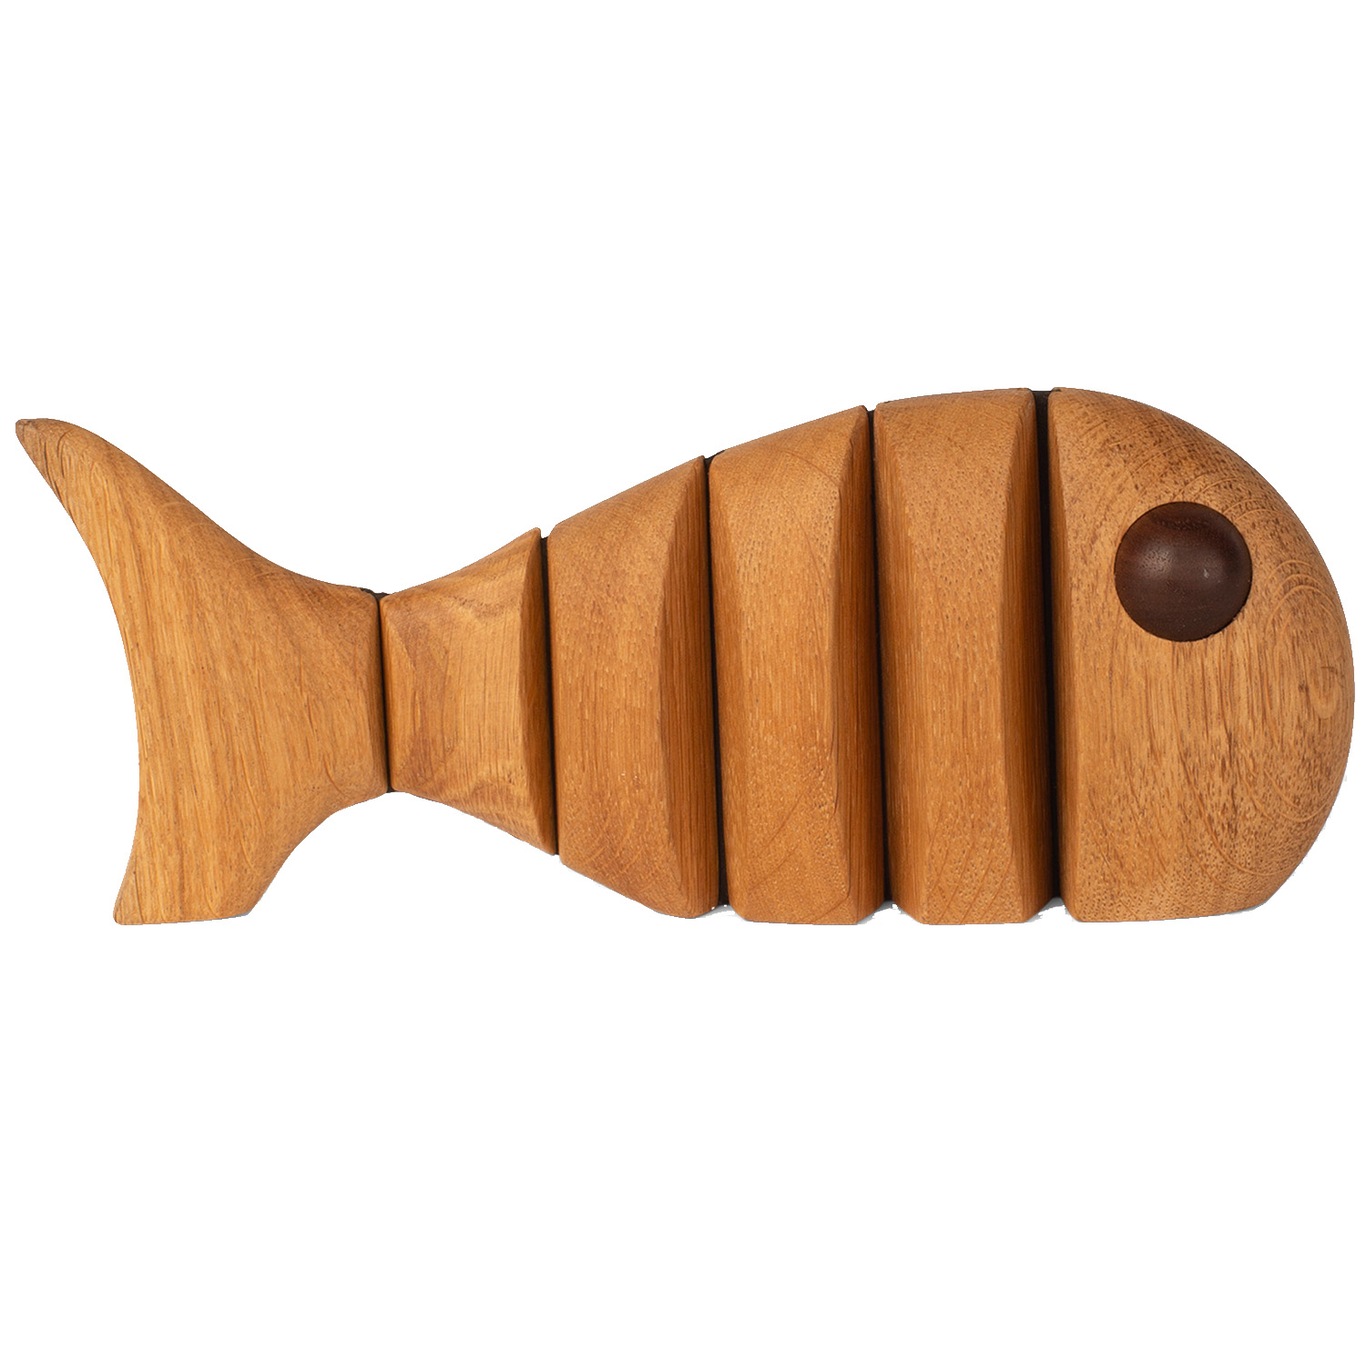 The Wood Fish Träfigur 18 cm